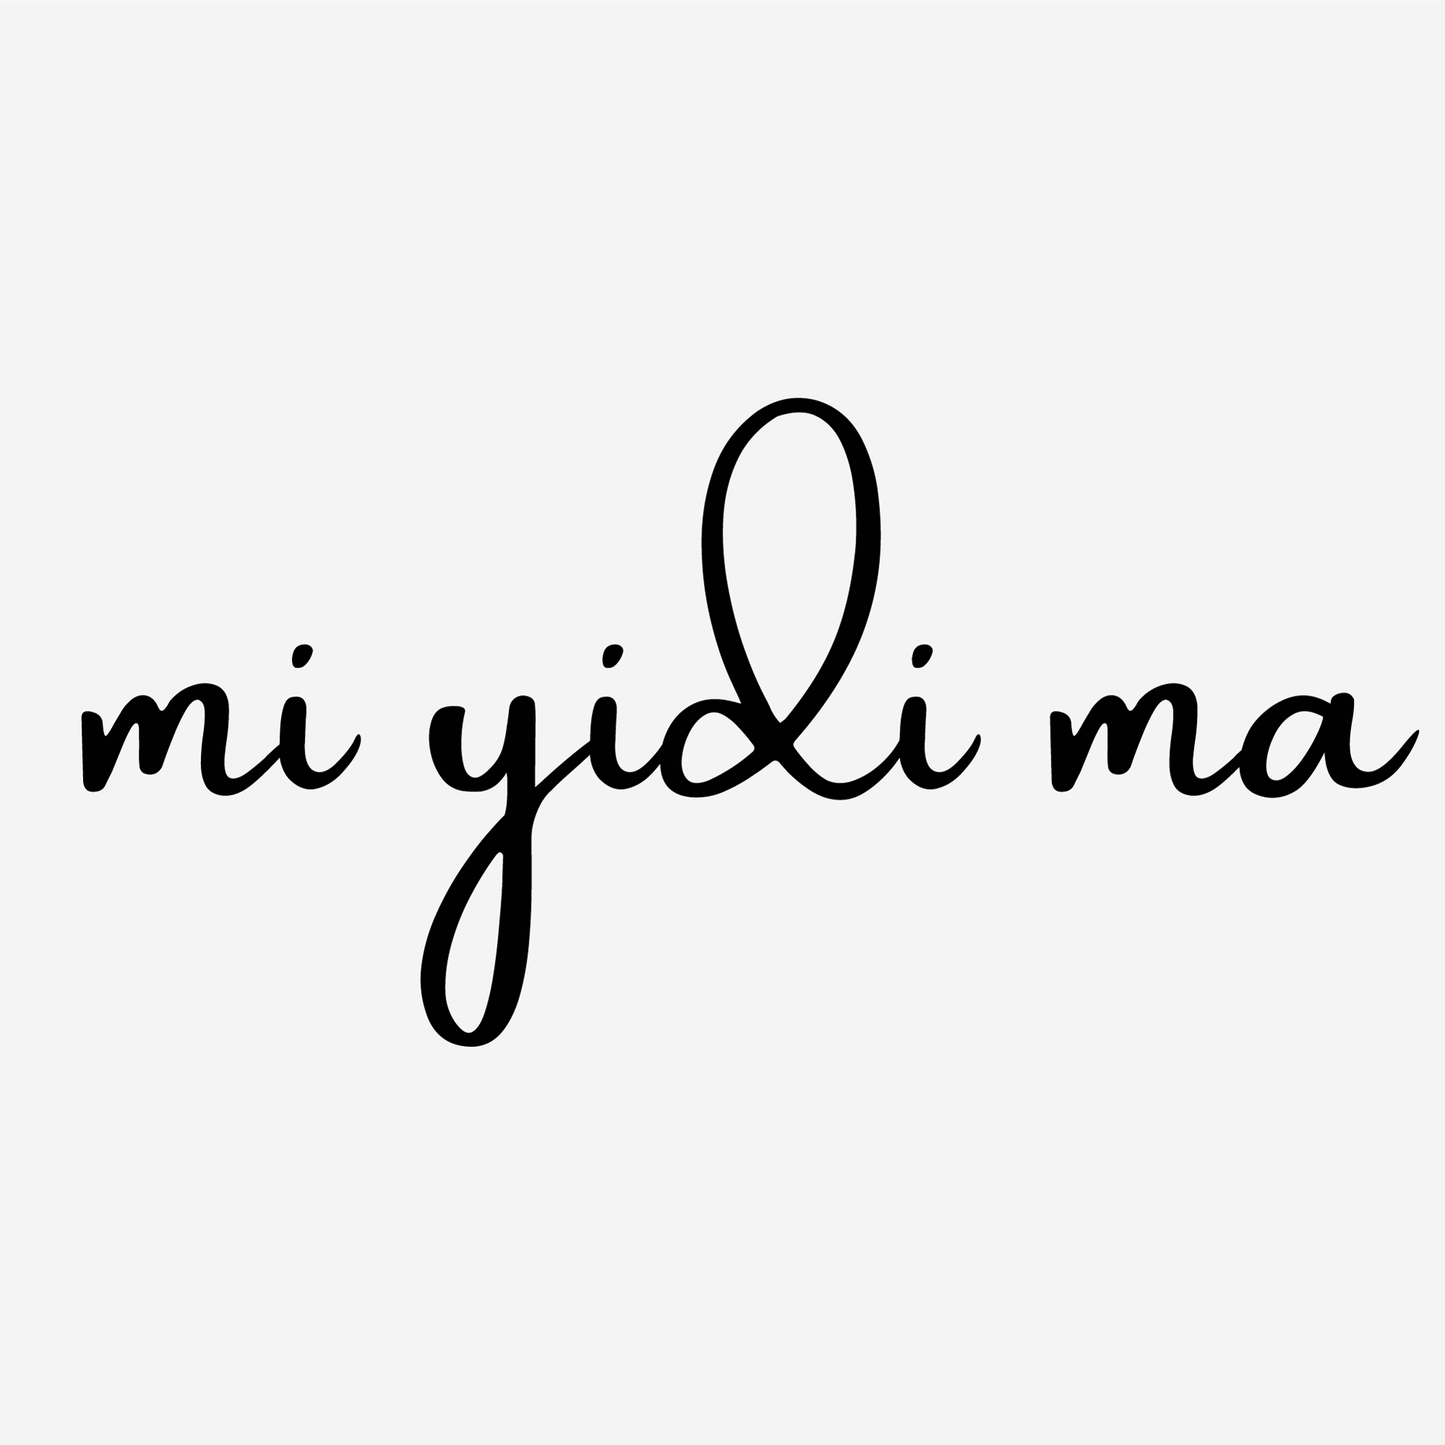 Affiche "Je t aime" en Pulaar - "Mi yidi ma" - 30x40 cm